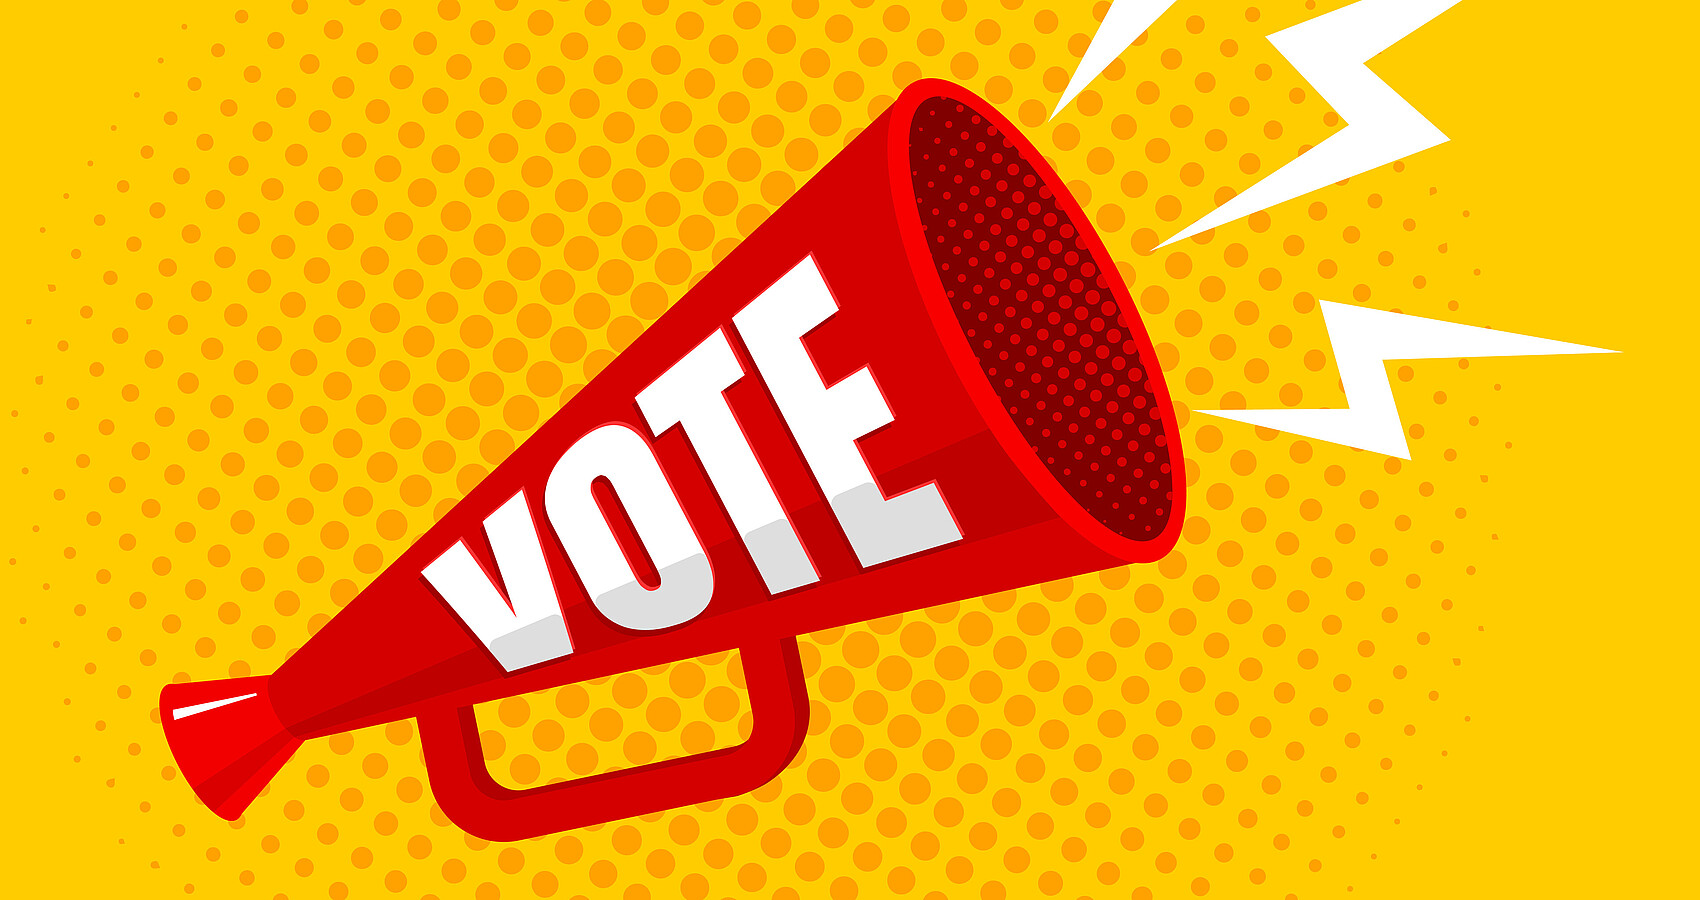 Das Bild zeigt ein rotes Megaphon auf gelben Hintergrund mit der Aufschrift "VOTE"